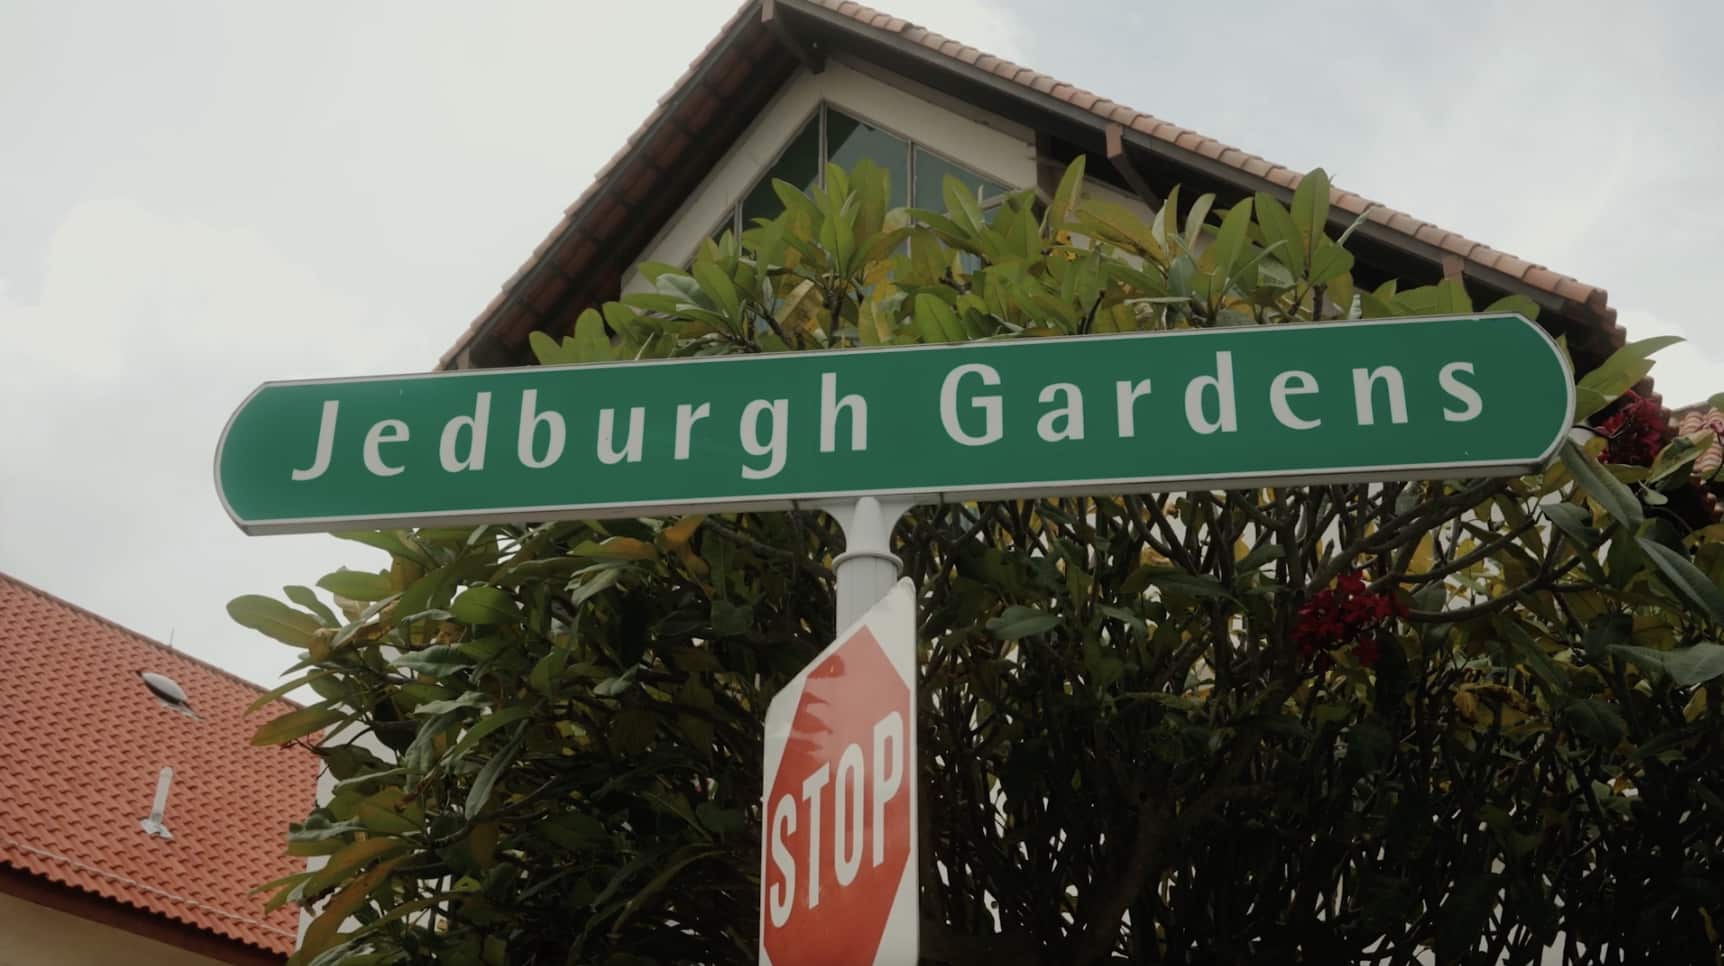 Jedburgh Gardens sign